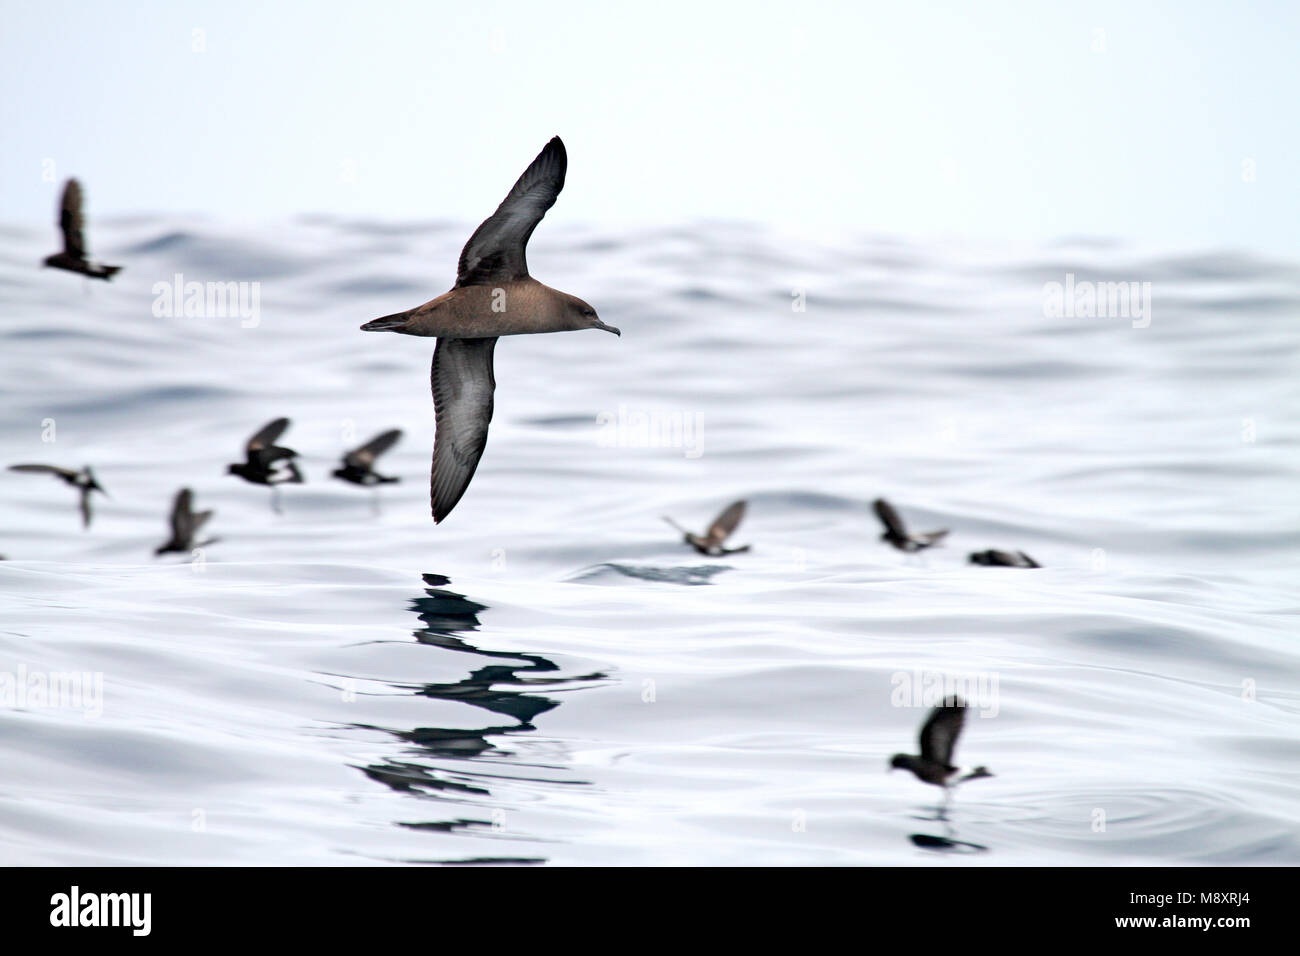 Grauwe Pijlstormvogel vliegend boven de Pacifische oceaan; Sooty Shearwater (Puffinus griseus) flying above Pacific ocean Stock Photo